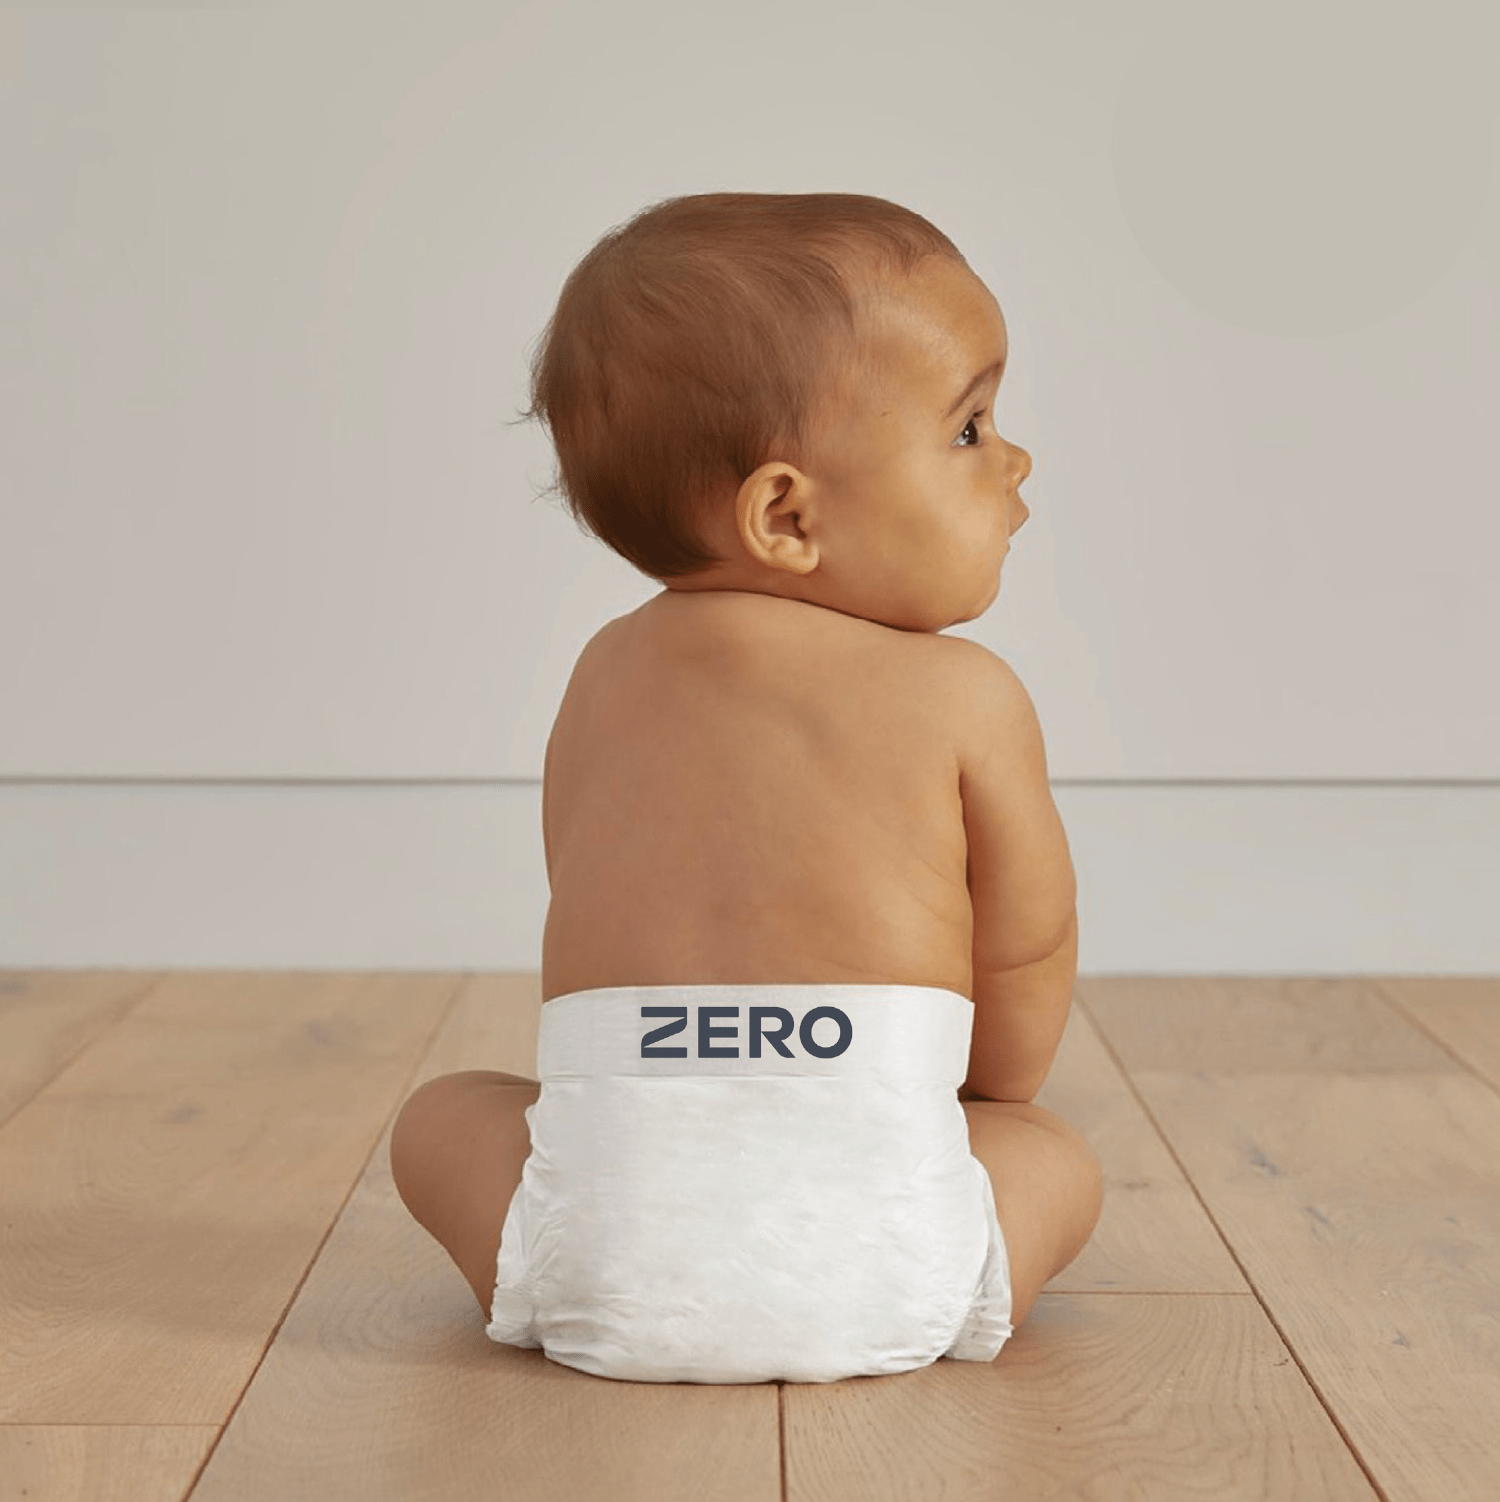 ZERO plastic free nappies diapers on baby